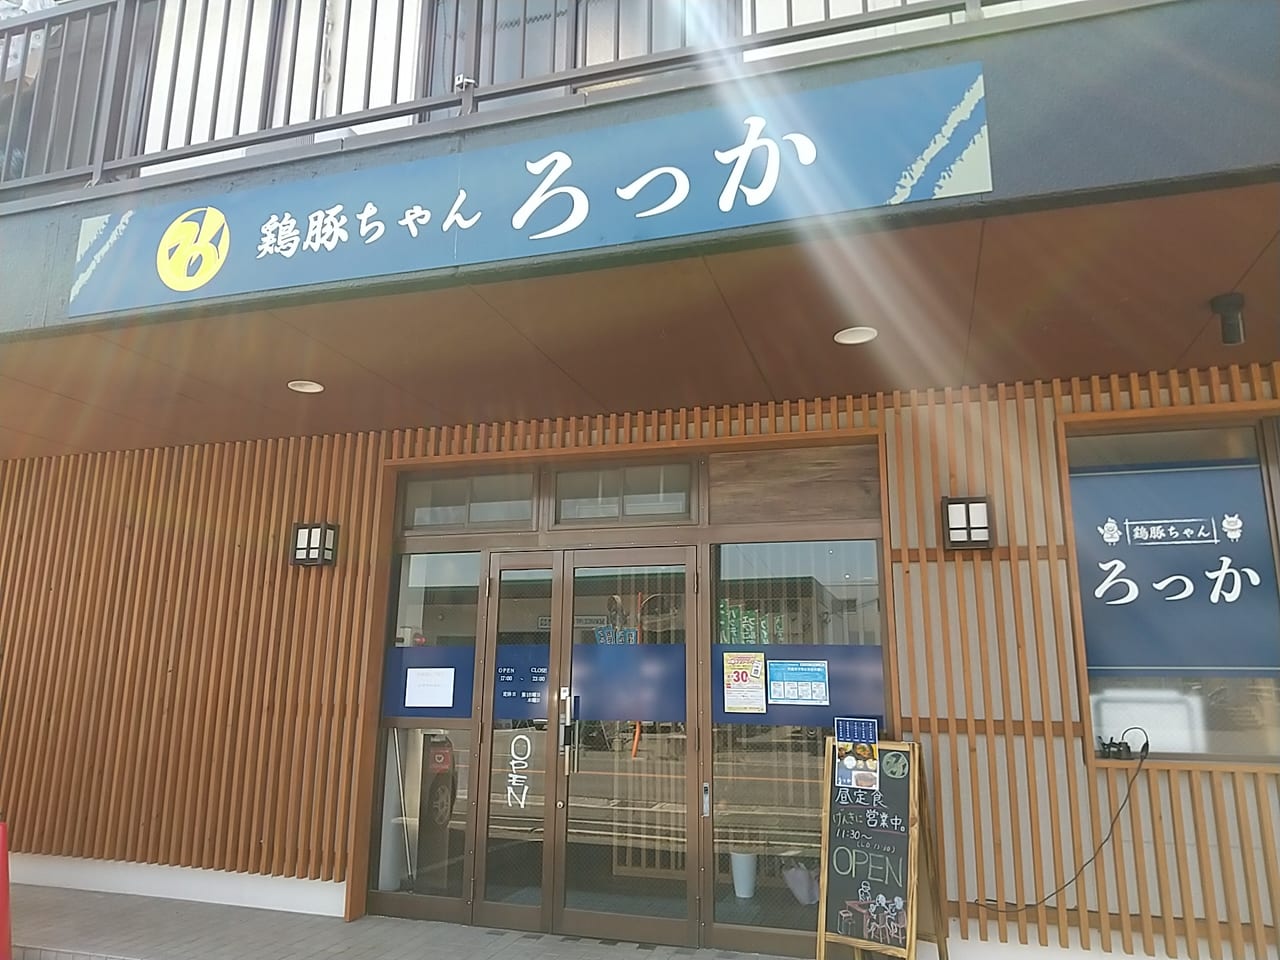 鶏ちゃん(岐阜県の郷土料理)がある居酒屋「ろっか」